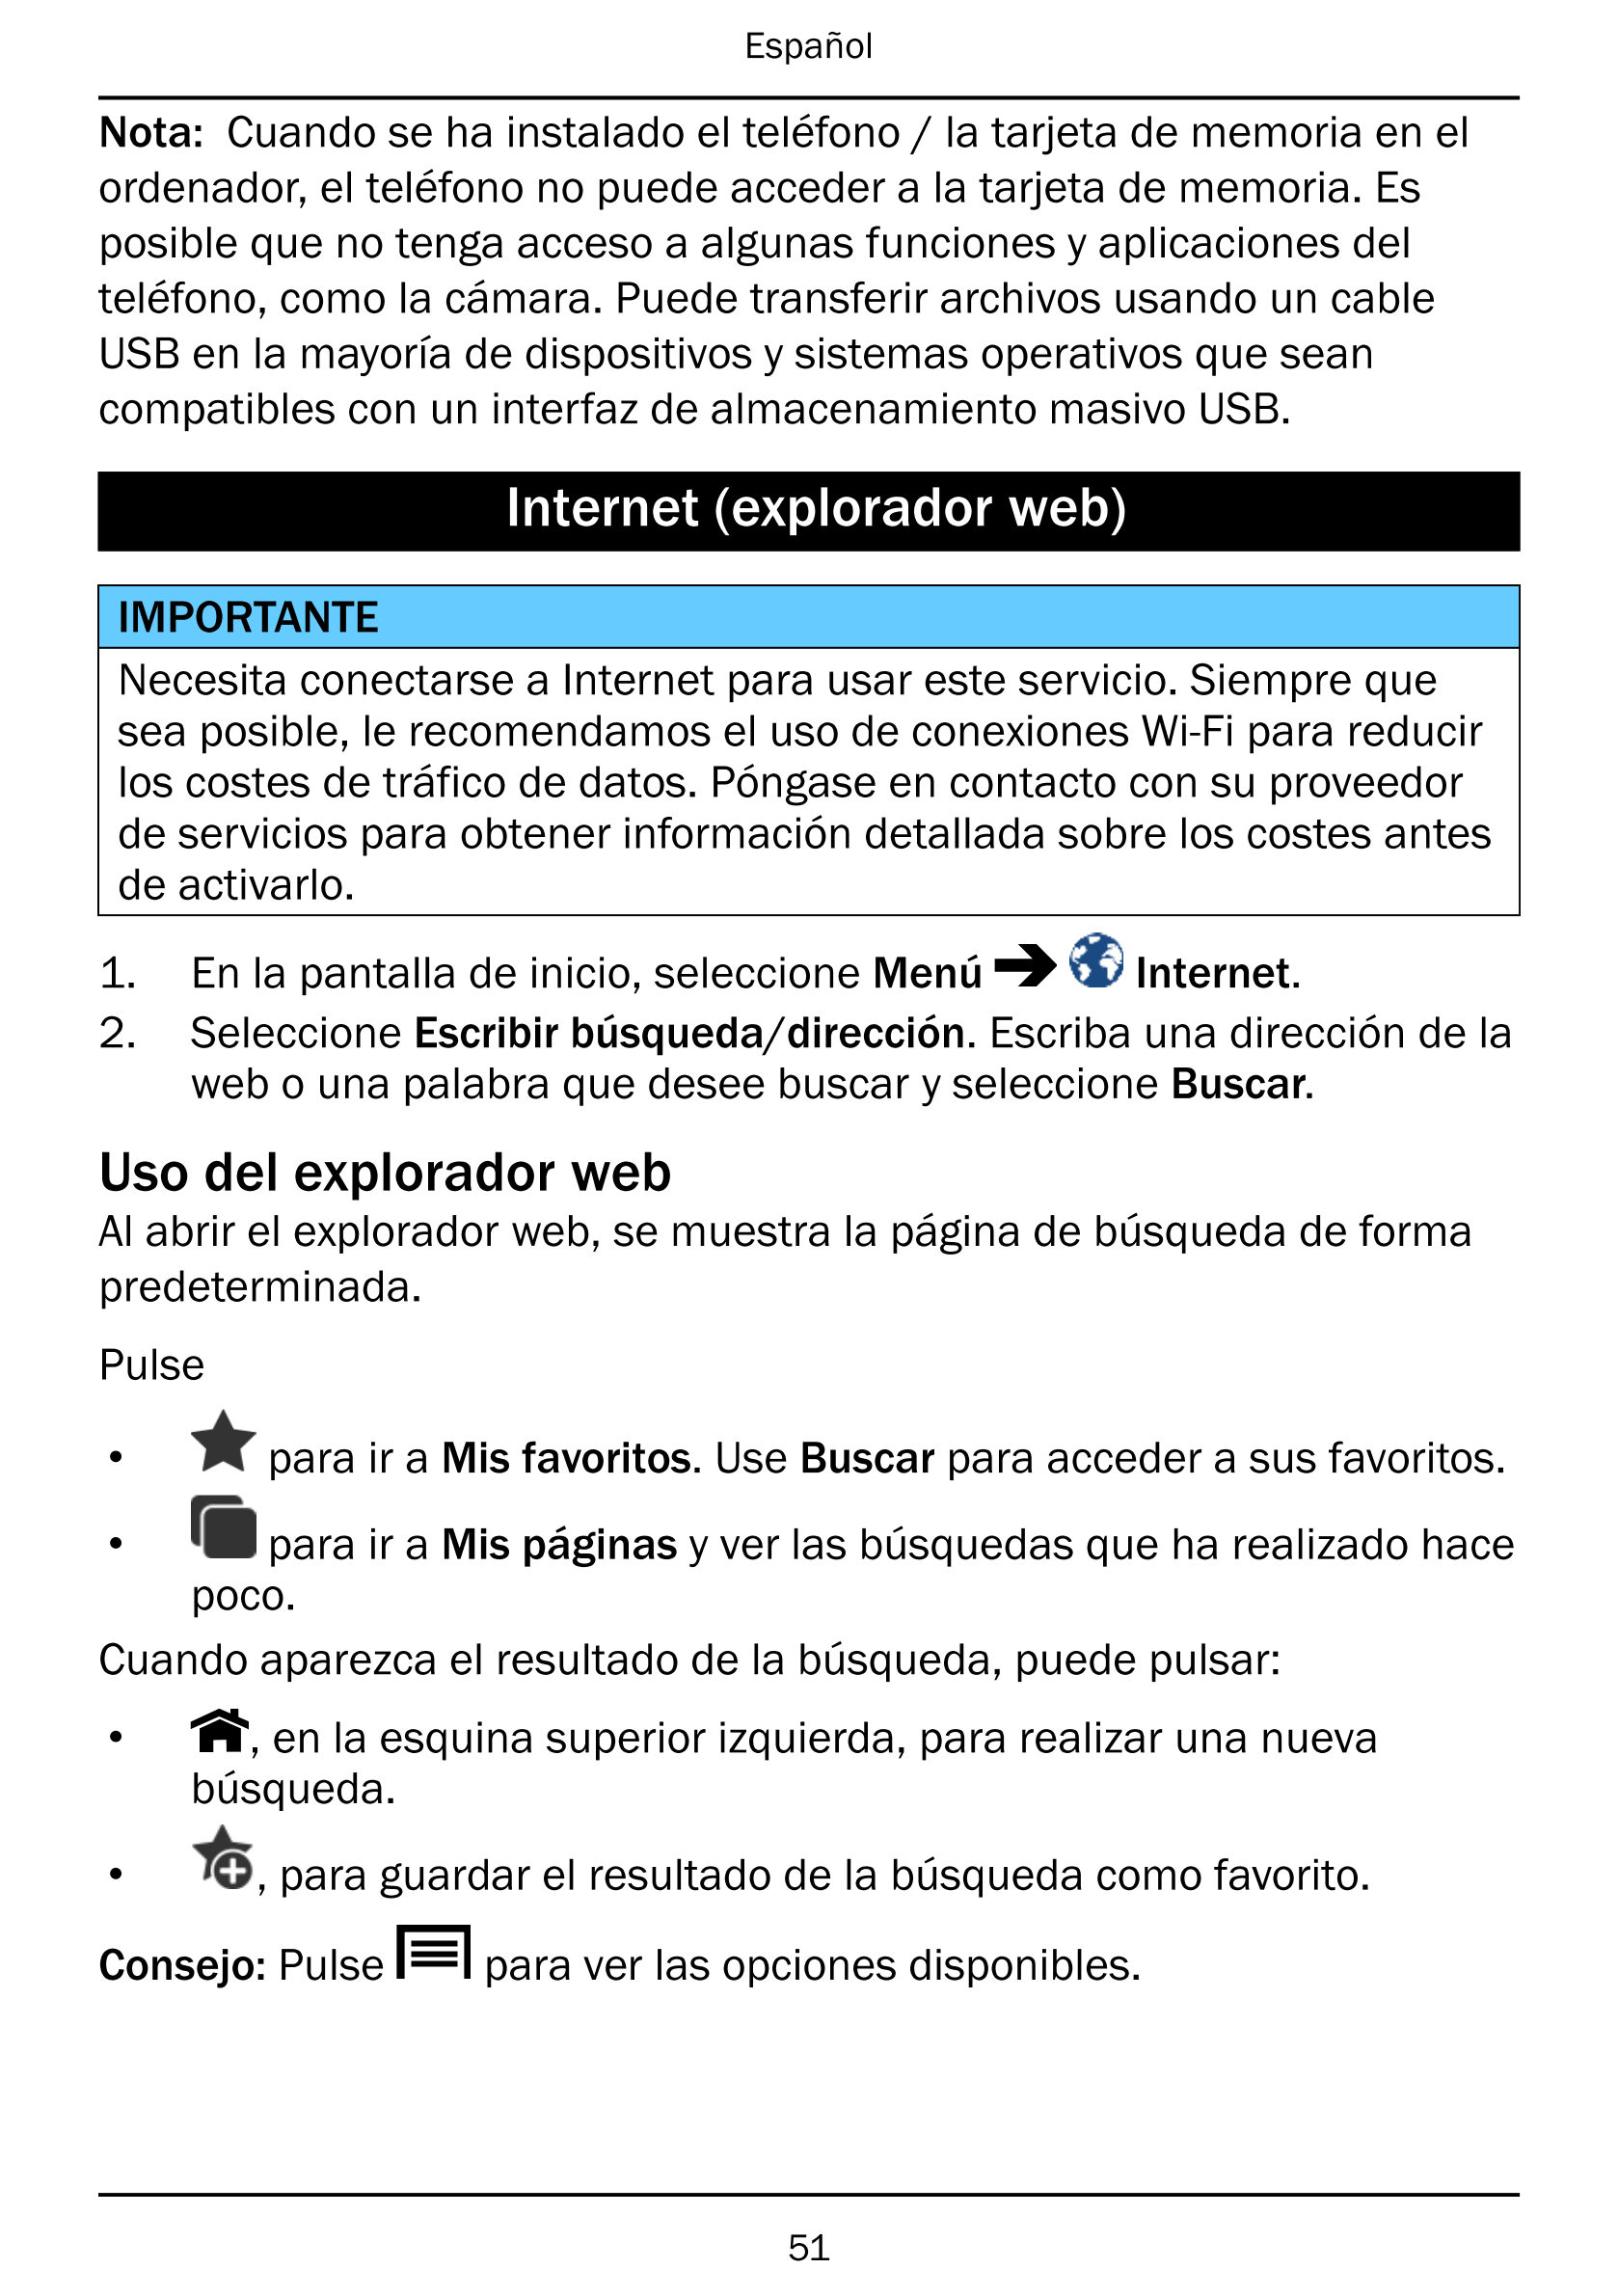 Español
Nota: Cuando se ha instalado el teléfono / la tarjeta de memoria en el
ordenador, el teléfono no puede acceder a la tarj